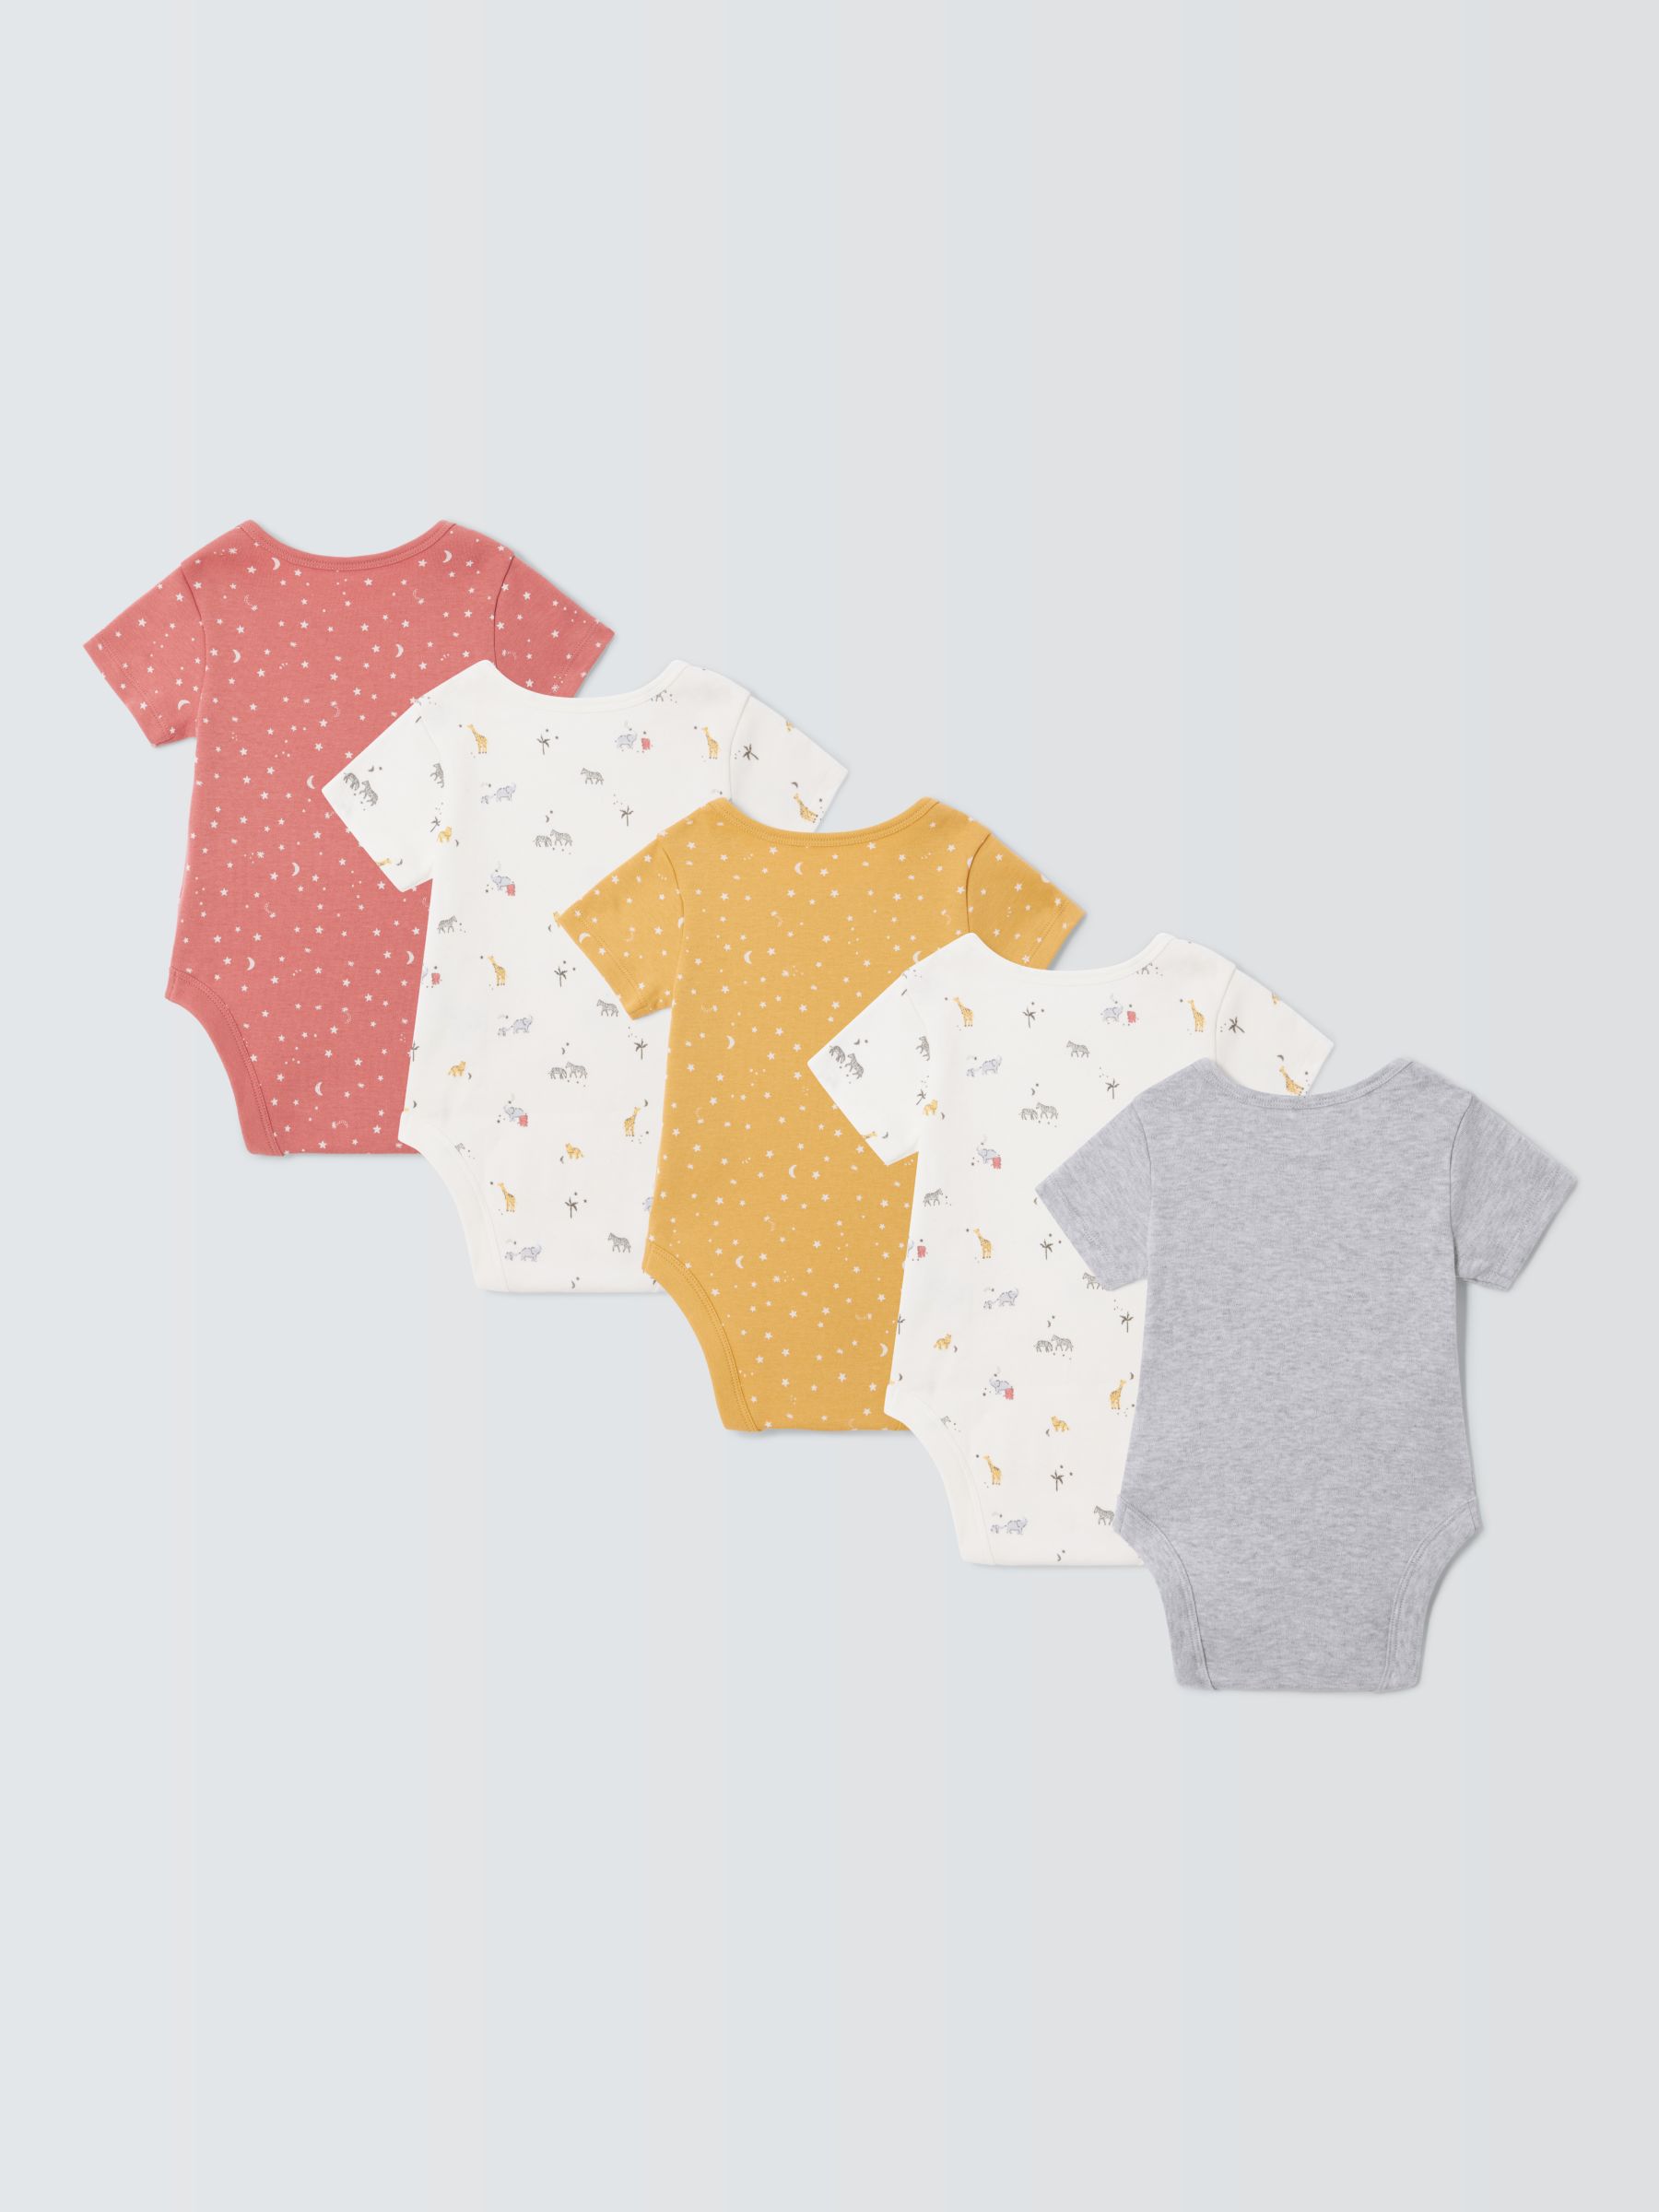 John Lewis Baby Cotton Safari Print Bodysuit, Pack of 5, Multi, 6-9 months